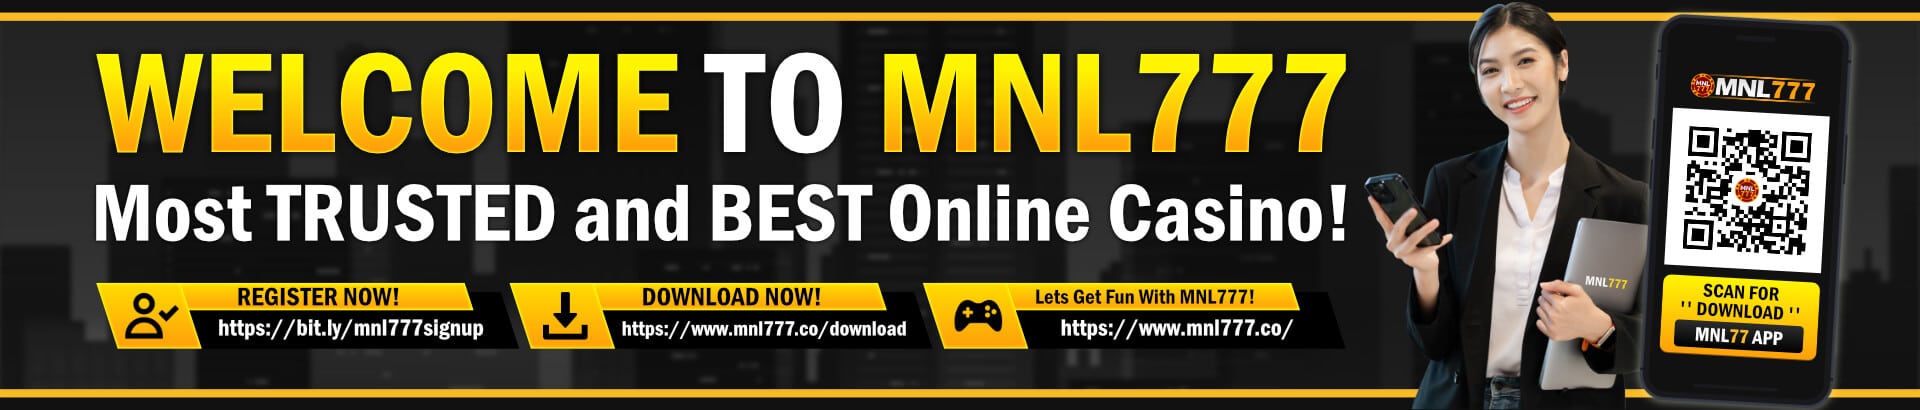 MNL777 Casino Register - Legal Philippine Online Casino